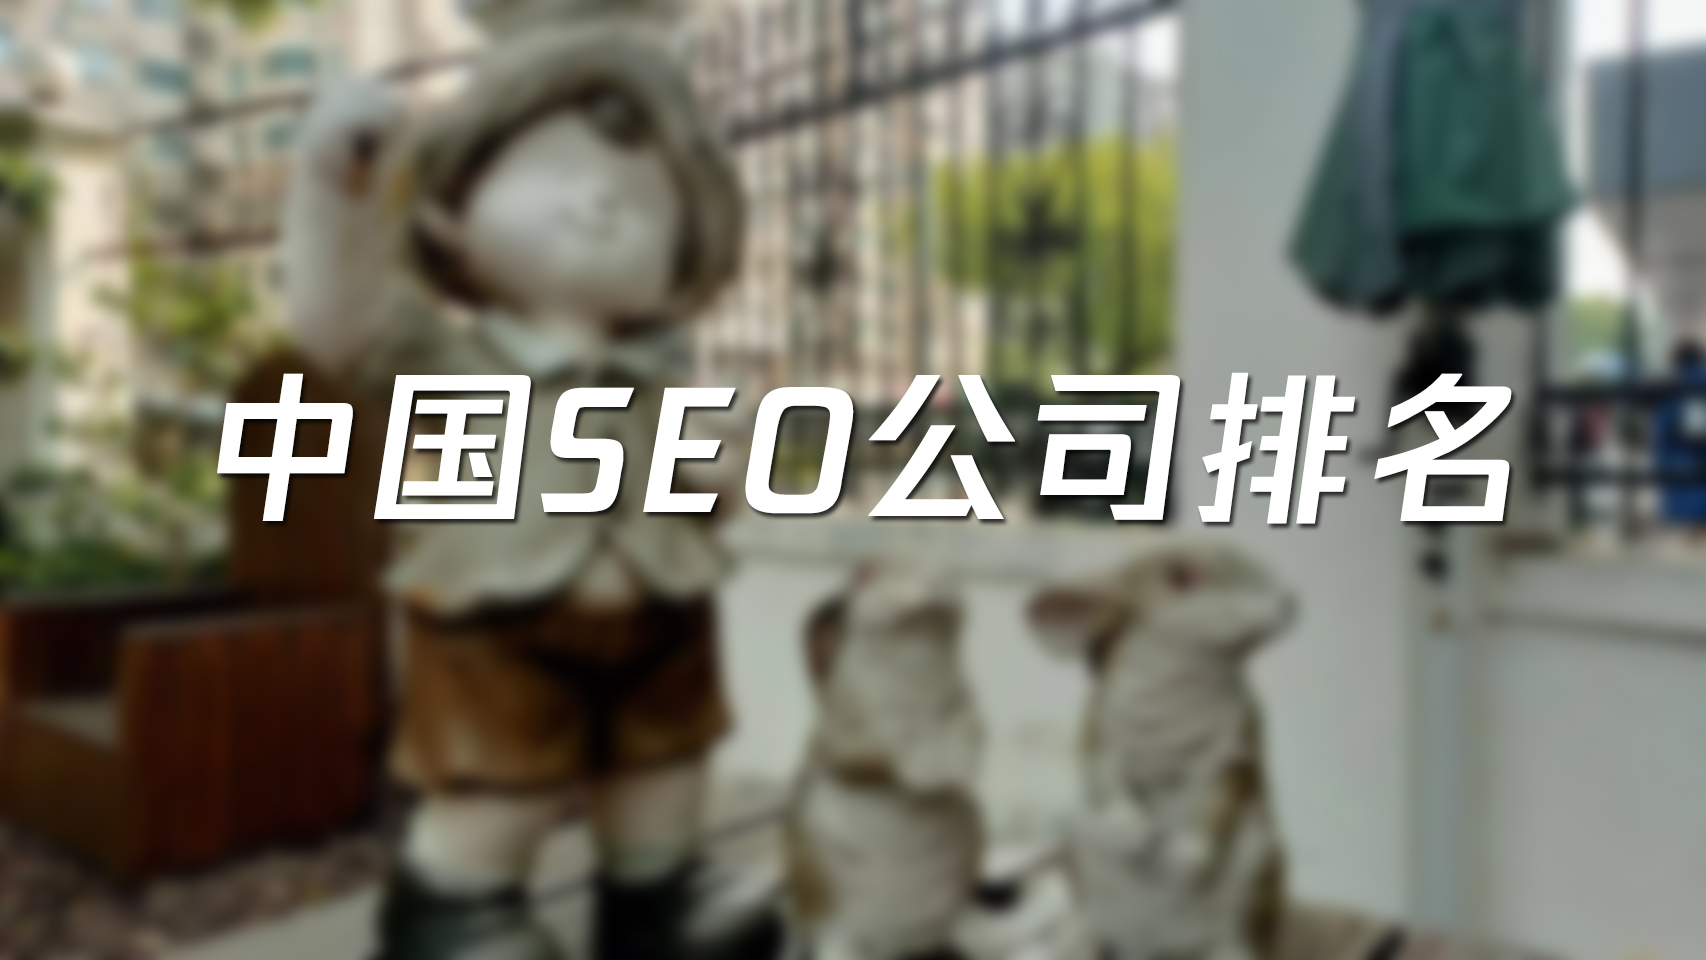 中国SEO公司排名网络营销外包公司排名TOP10